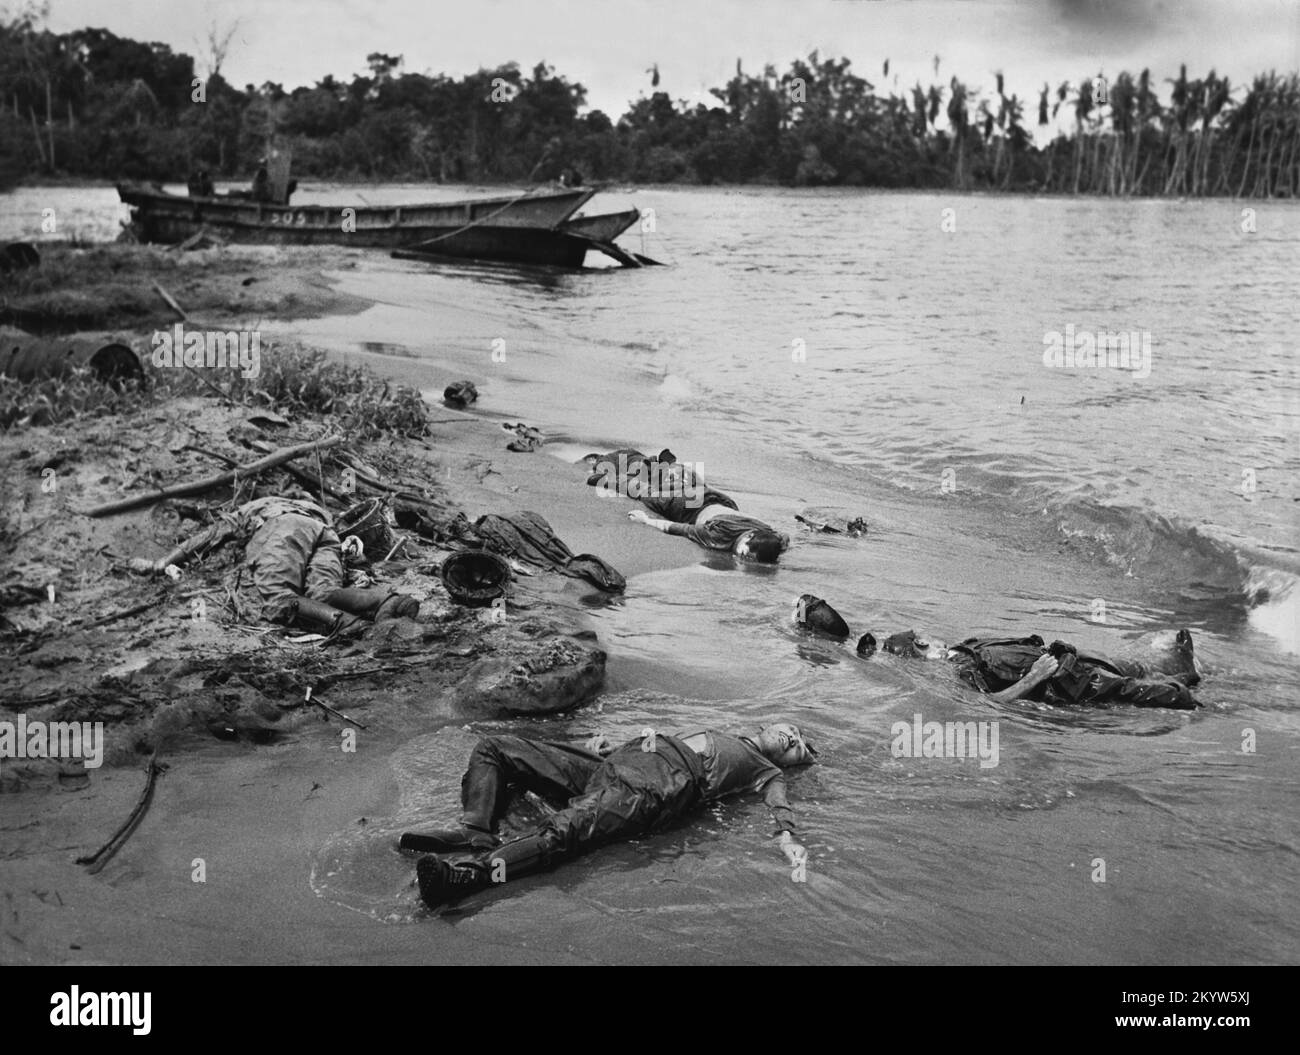 Photo d'époque vers mars 1943 de soldats japonais morts à côté de leur embarcation détruite sur une plage à Buna, en Nouvelle-Guinée, après une attaque des forces armées américaines et australiennes. Banque D'Images